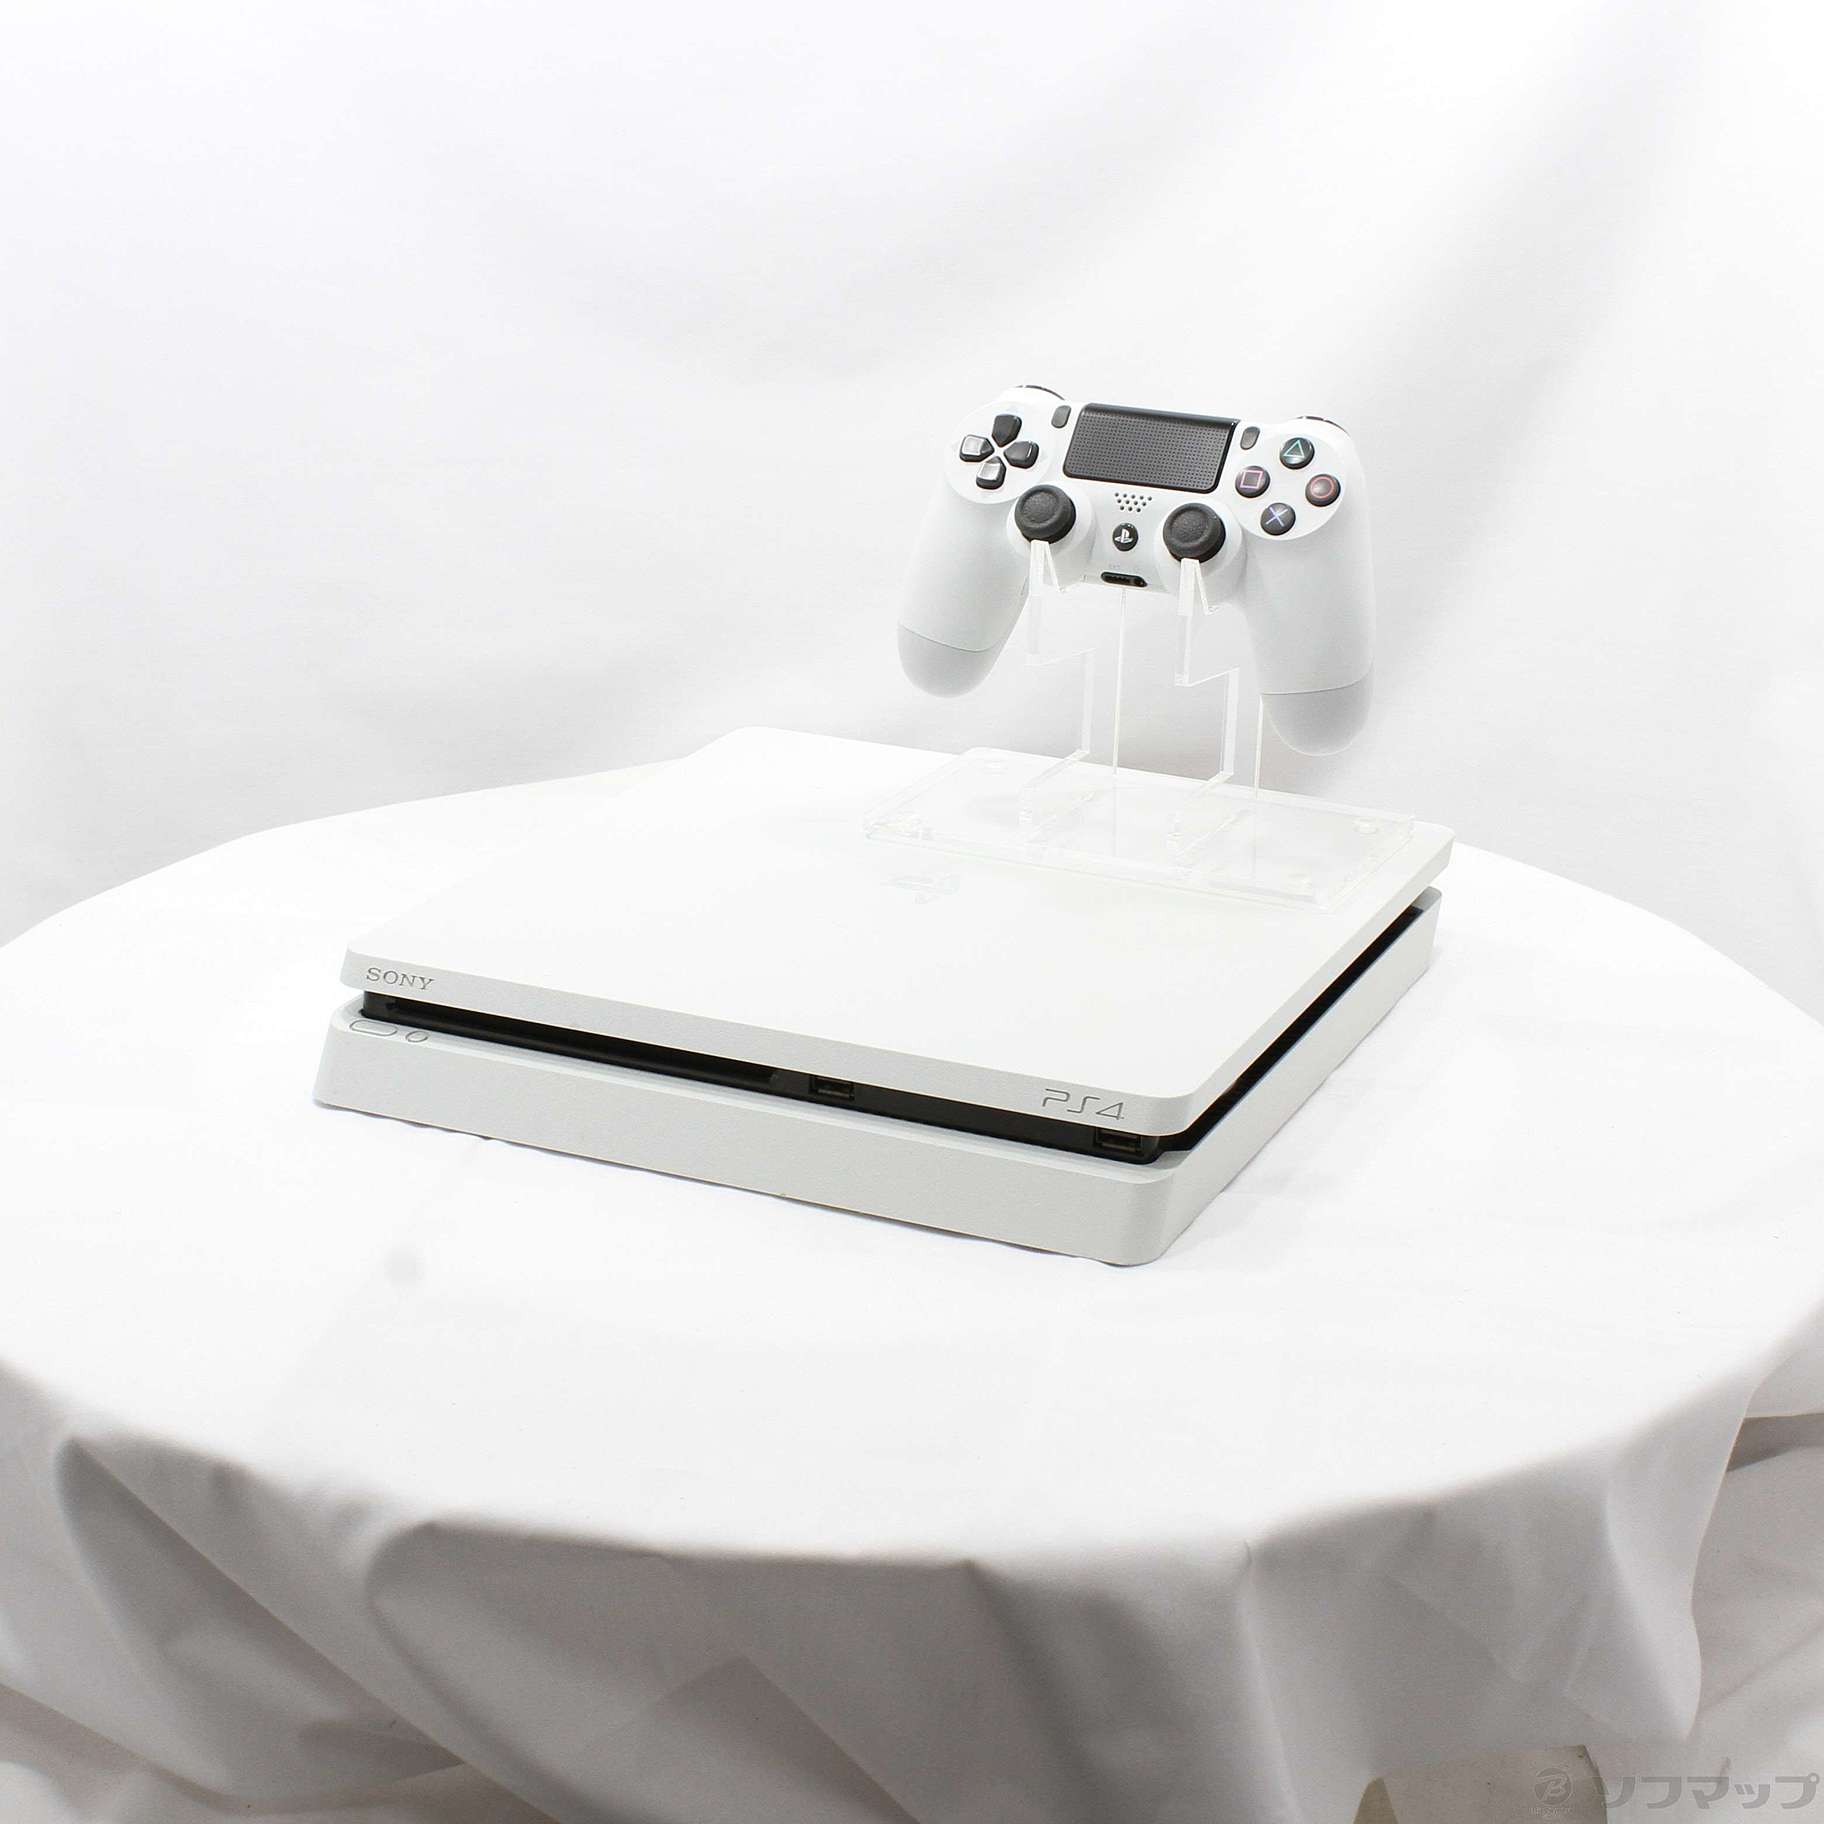 〔中古品〕 PlayStation 4 グレイシャー・ホワイト 500GB